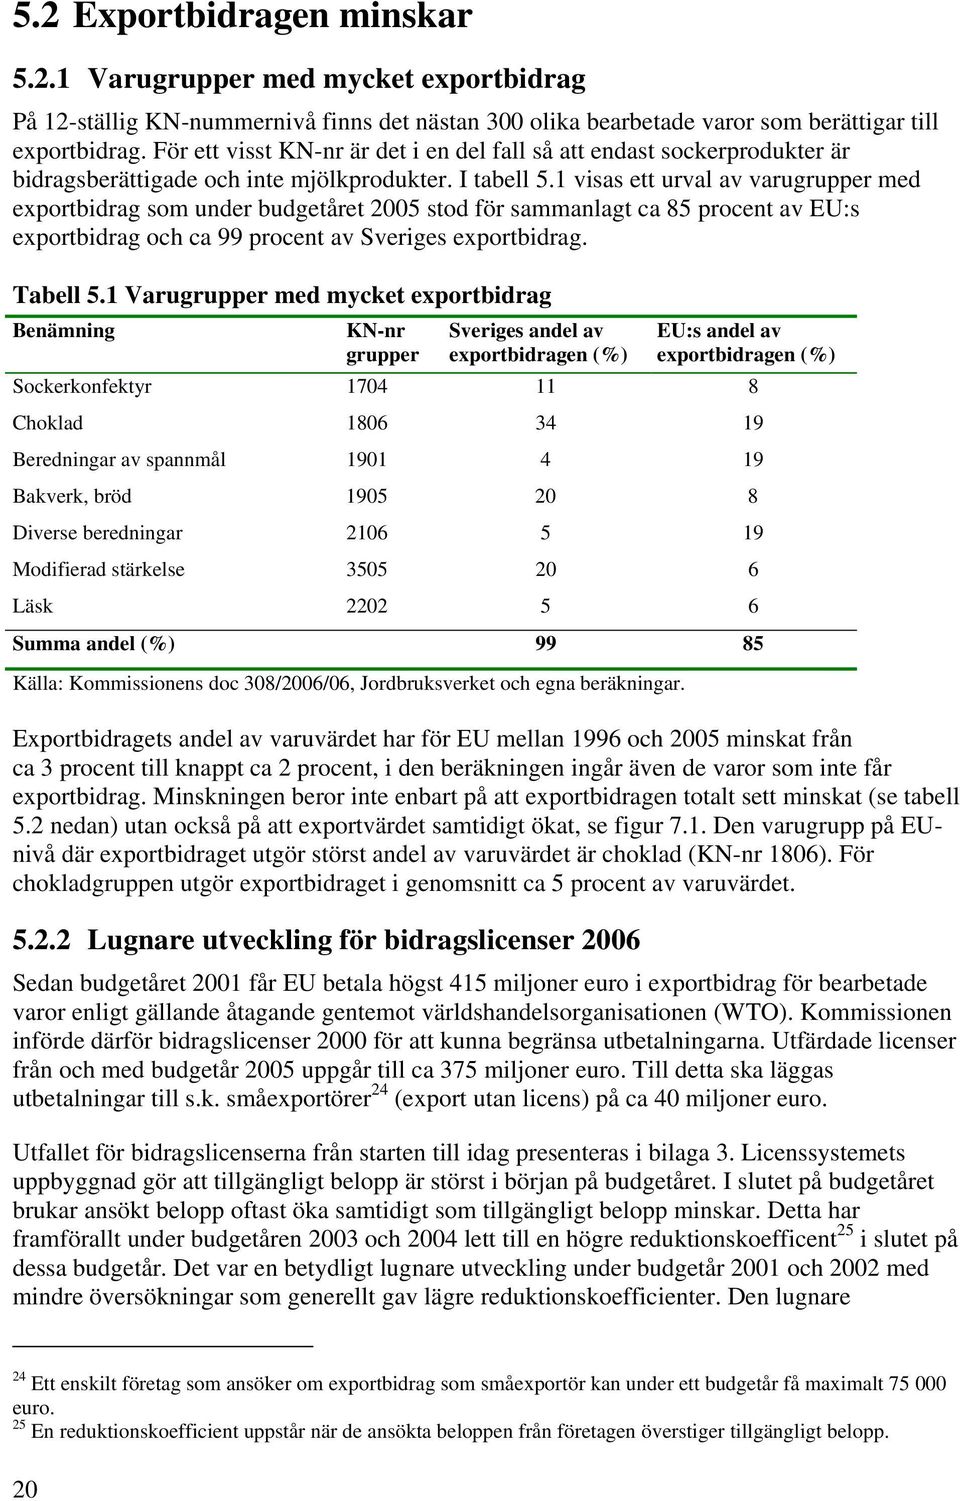 1 visas ett urval av varugrupper med exportbidrag som under budgetåret 2005 stod för sammanlagt ca 85 procent av EU:s exportbidrag och ca 99 procent av Sveriges exportbidrag. Tabell 5.